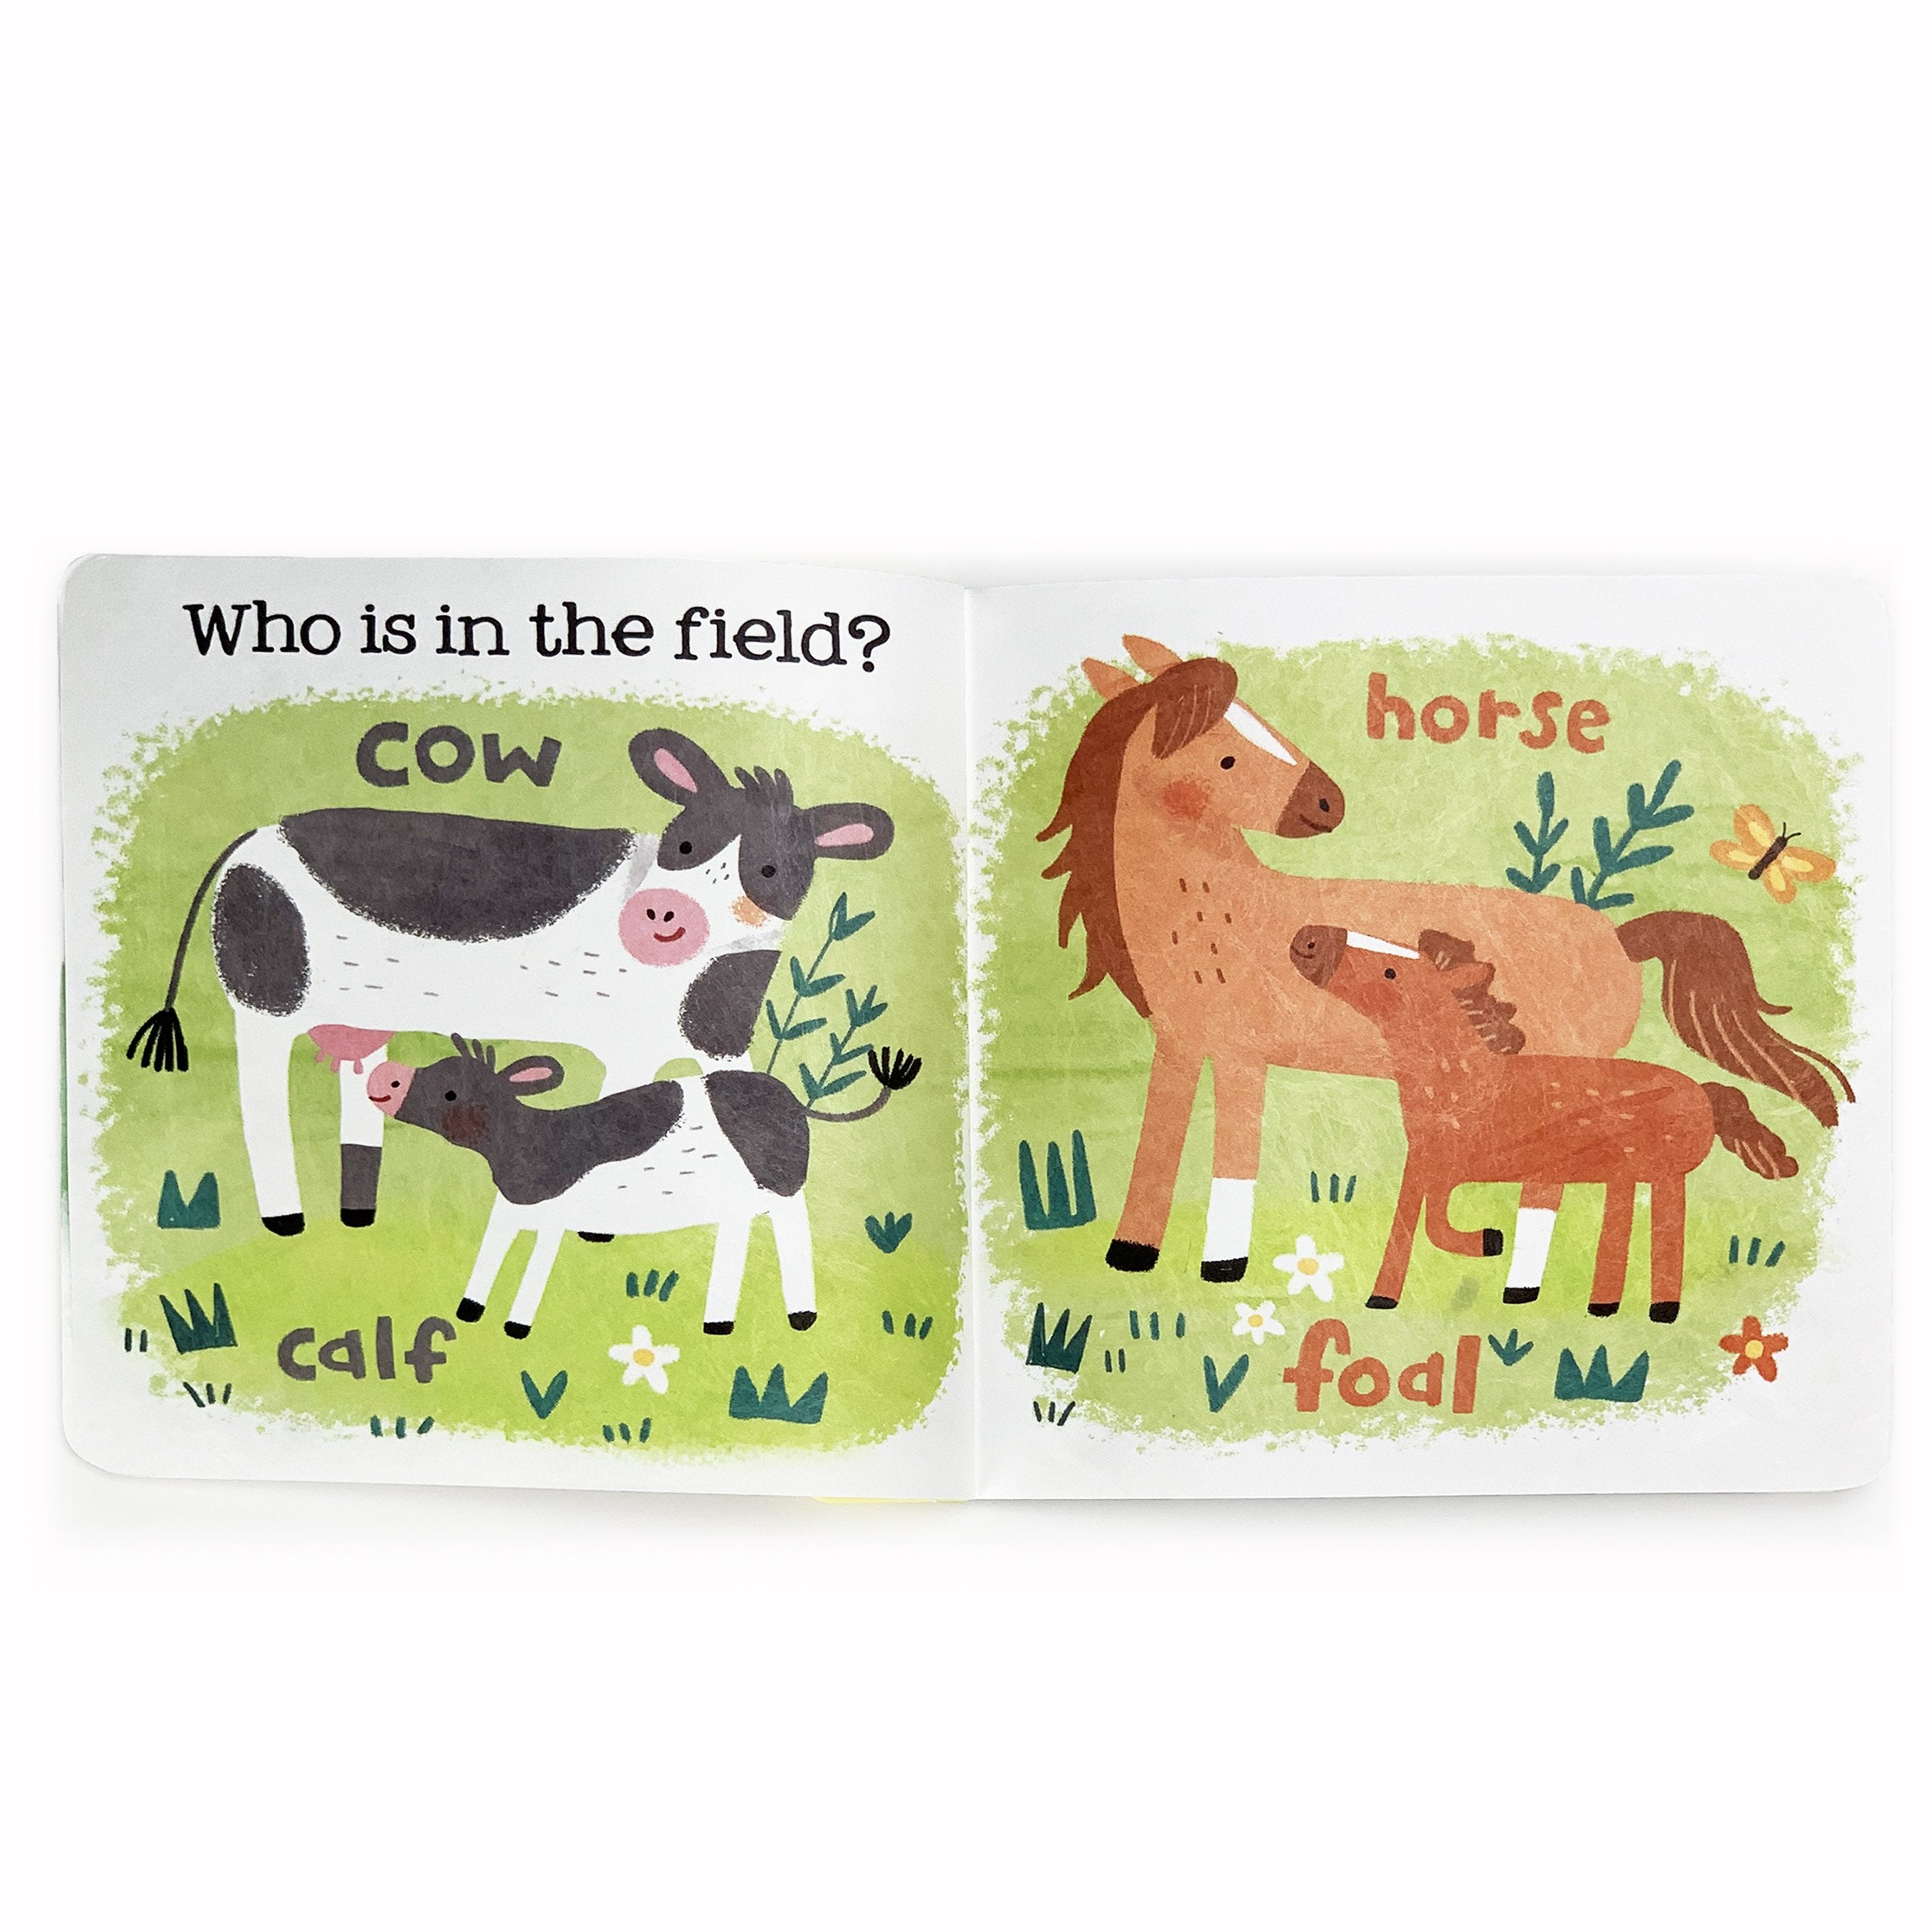 Farm Babies - A Tuffy Book    